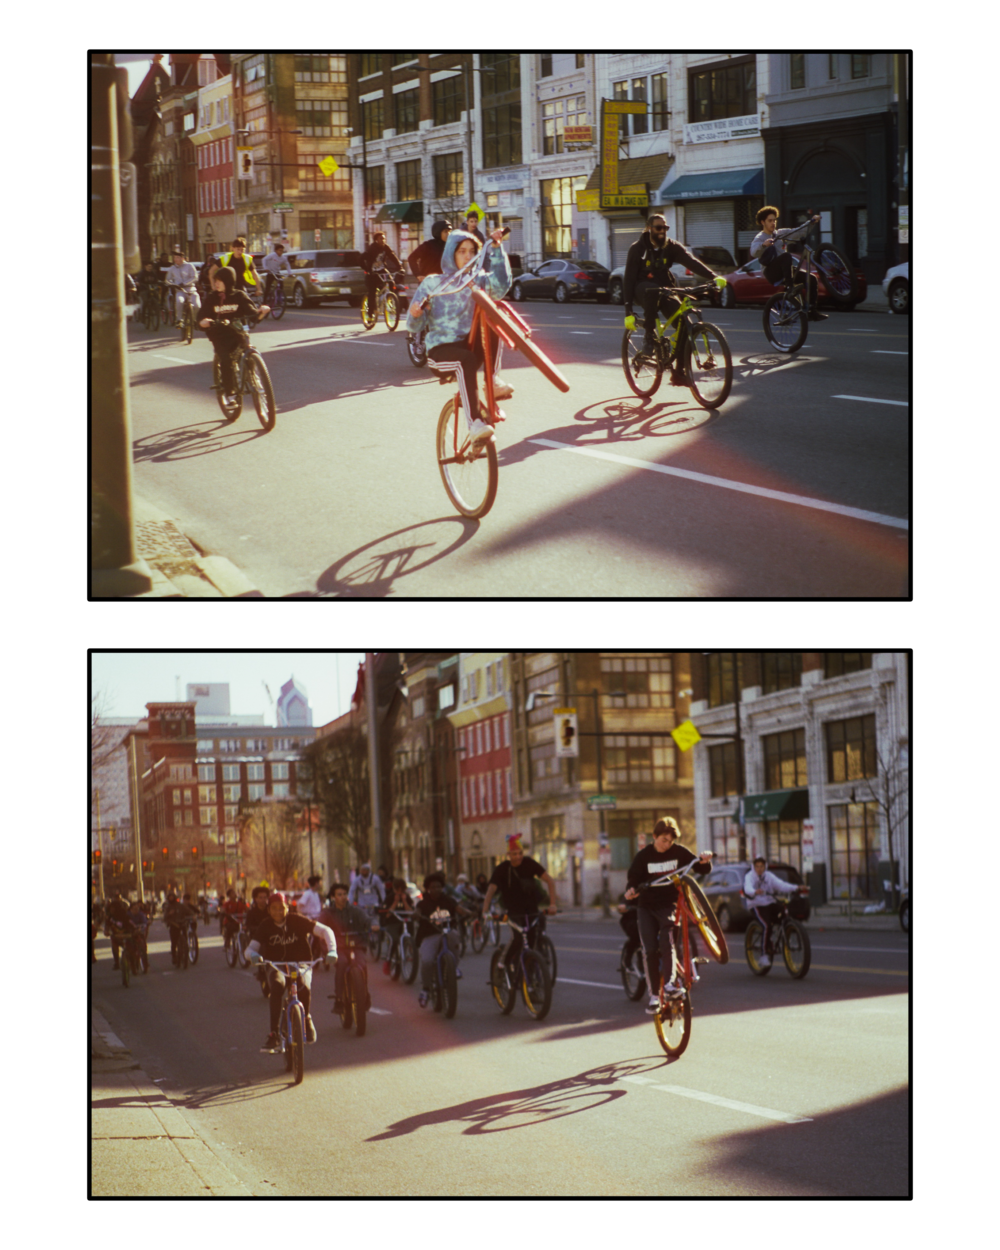 Photos of kids riding bikes down city street